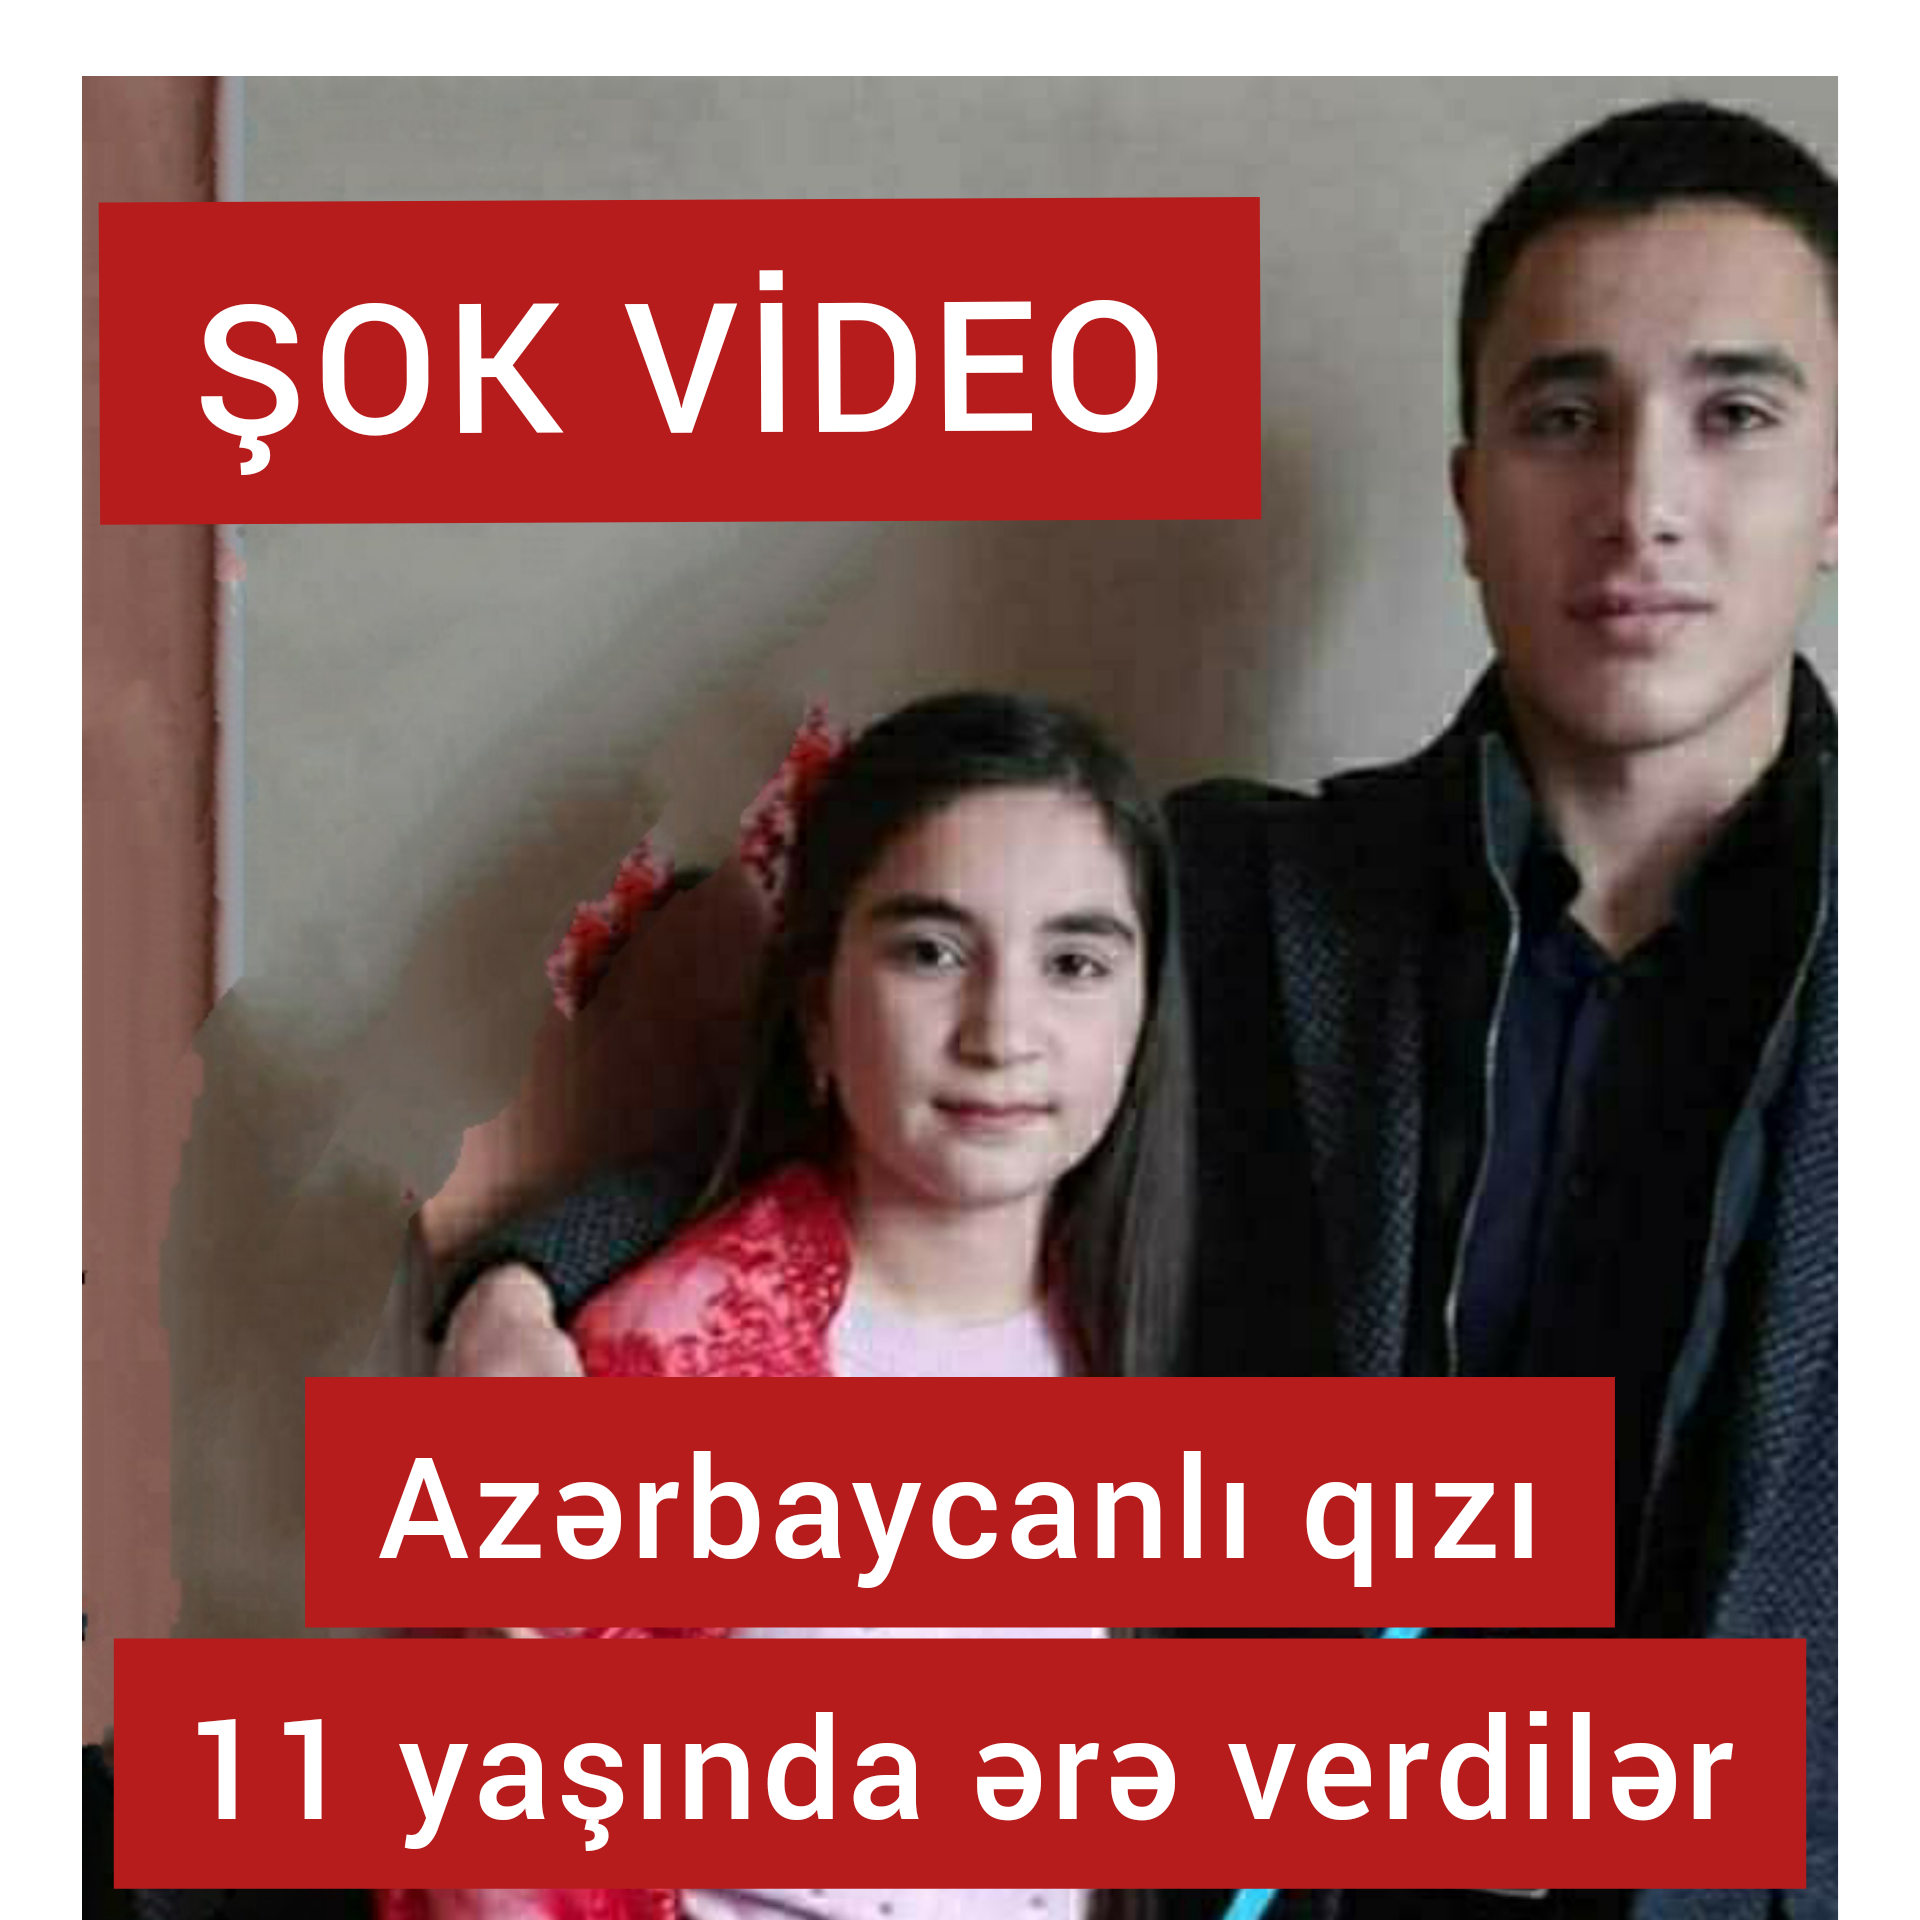 11 yaşlı azərbaycanlı qızı nişanlandılar ŞOK VİDEO